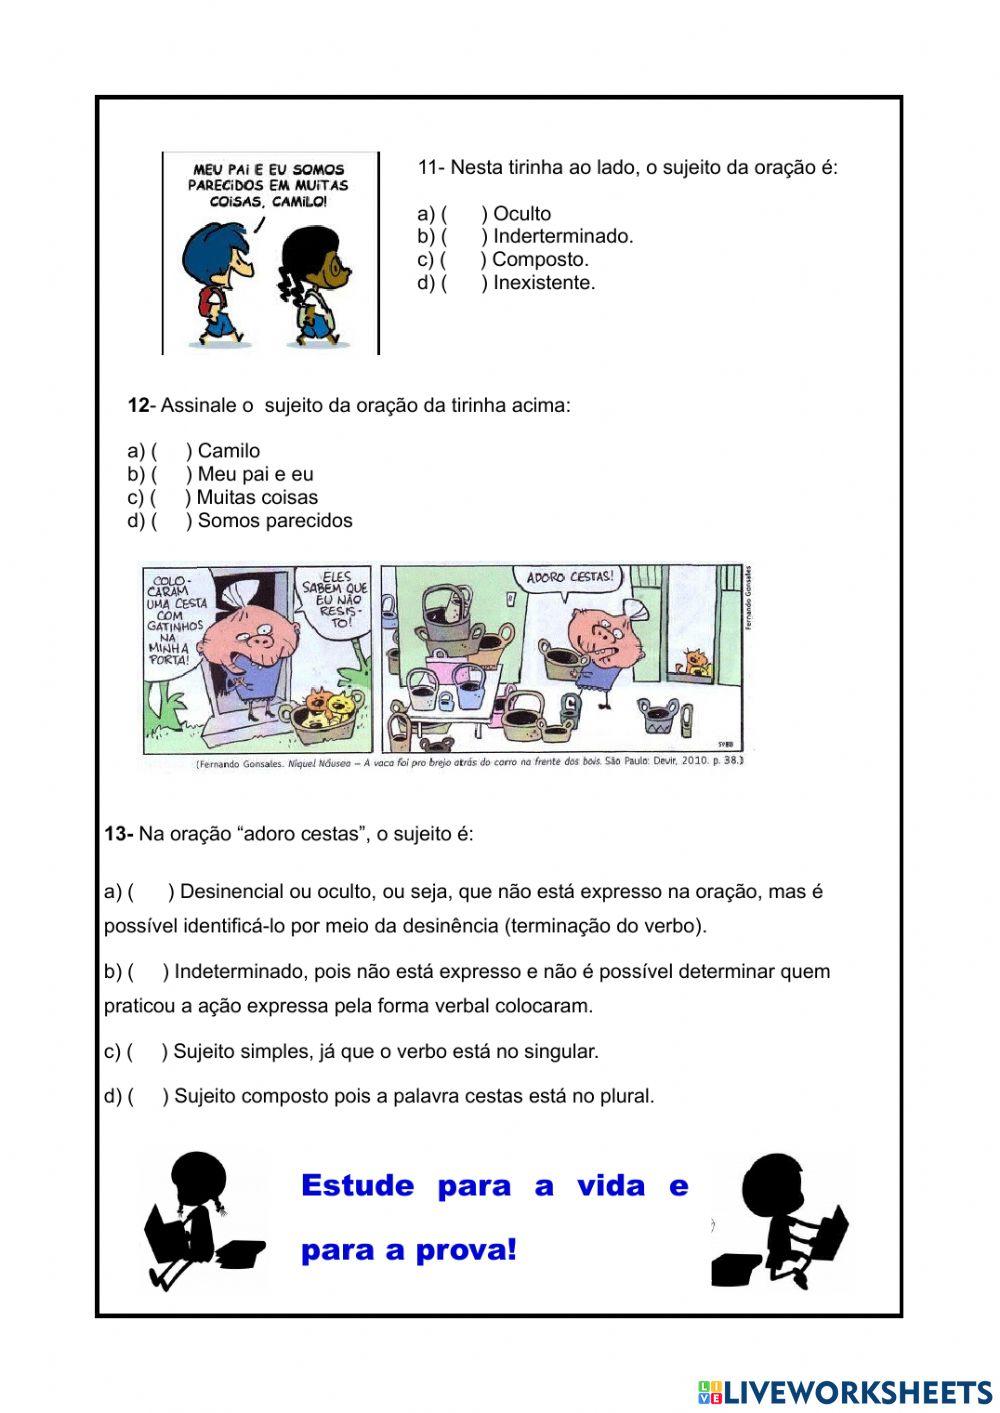 Revisão de Português- Tipos de sujeito- modos verbais-concordância nominal e verbal